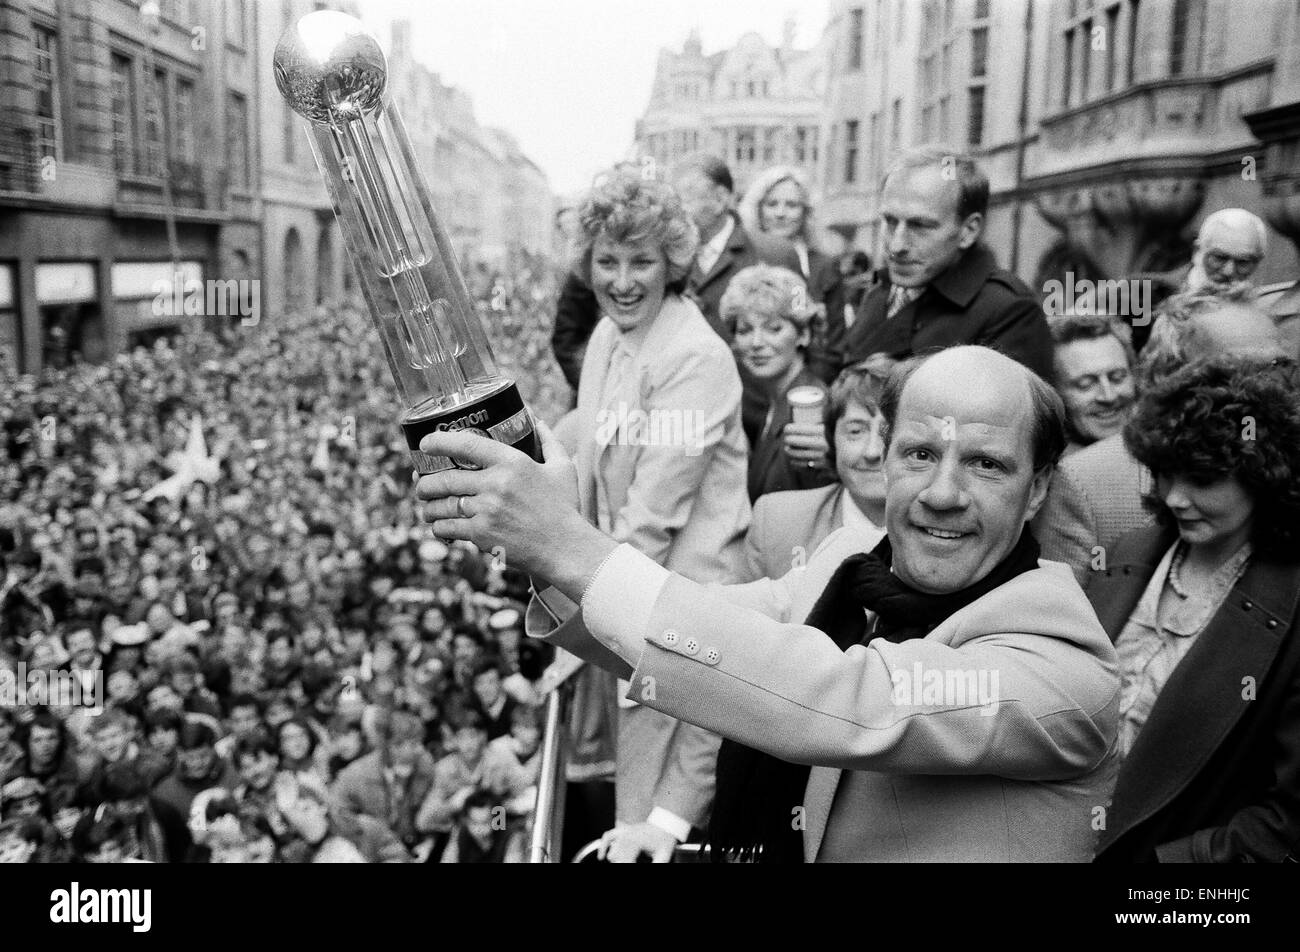 Oxford United FC-Manager Jim Smith, hält empor die zweite Liga-Meisterschaft-Trophäe auf einem offenen Bus Parade, angefeuert von Tausenden von Fans, die die Straßen von Oxford, ihrem Team Erfolg zu feiern. 13. Mai 1985. Stockfoto